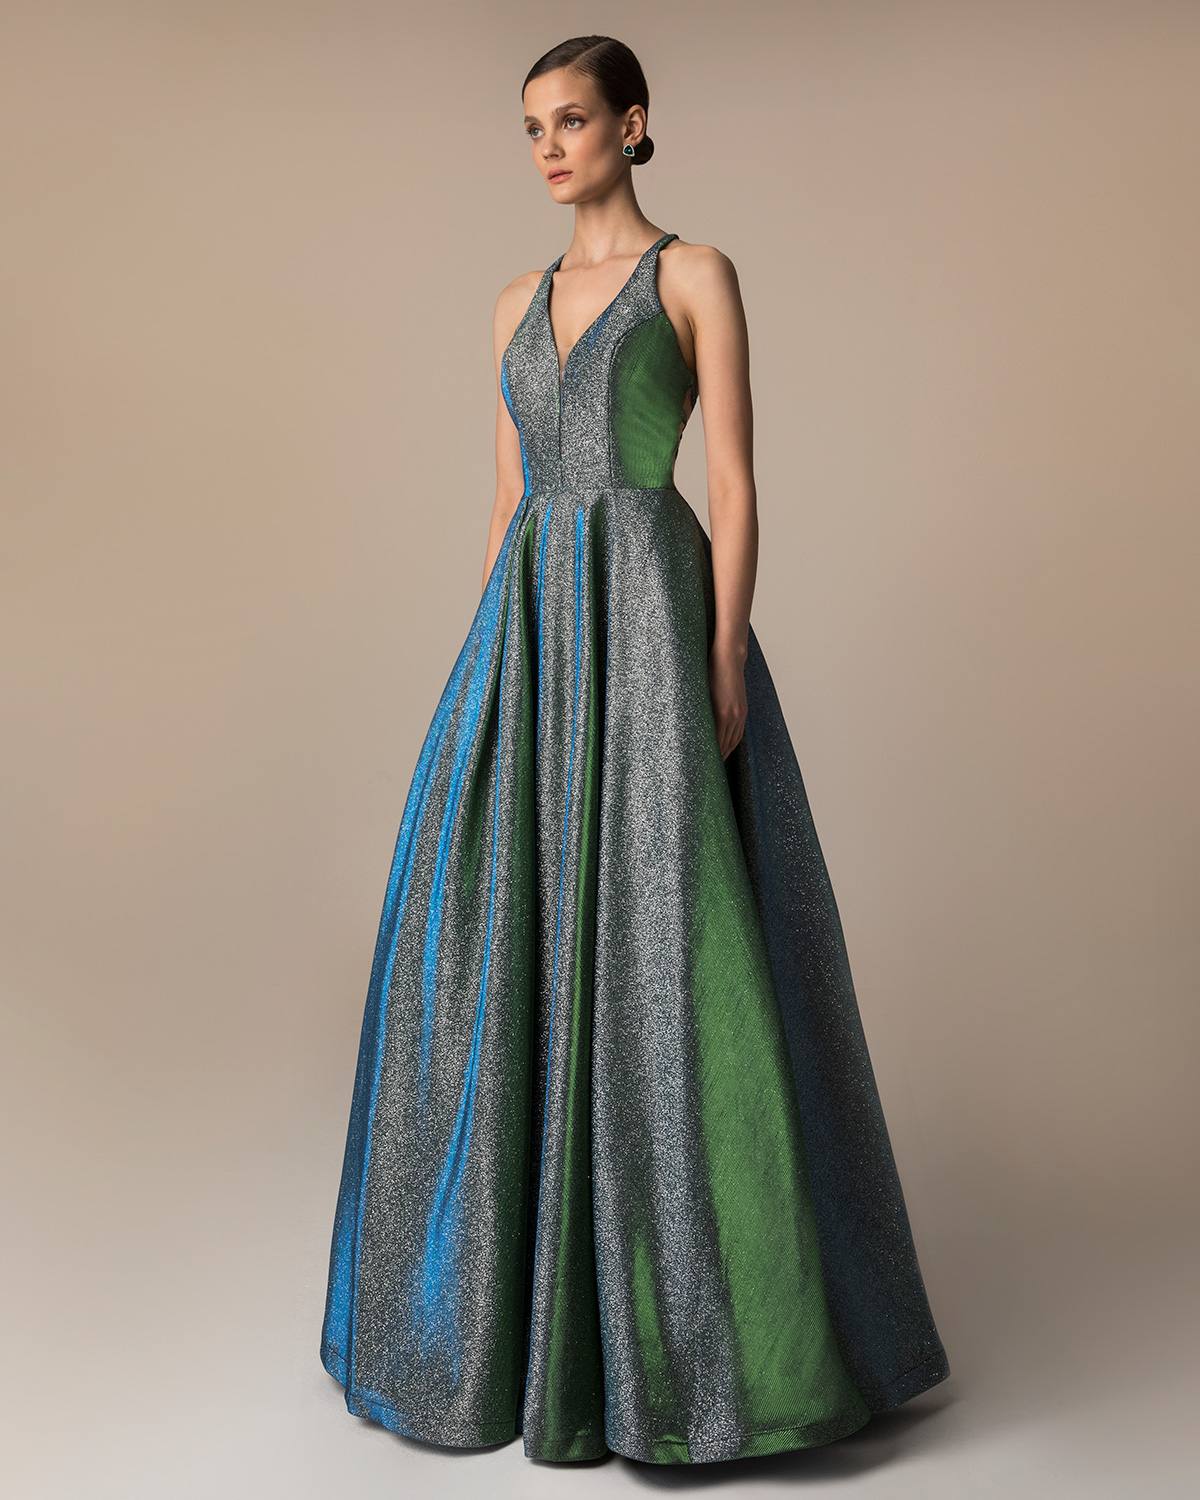 Βραδυνά Φορέματα / Βραδινό μακρύ εξώπλατο φόρεμα από γυαλιστερό ύφασμα